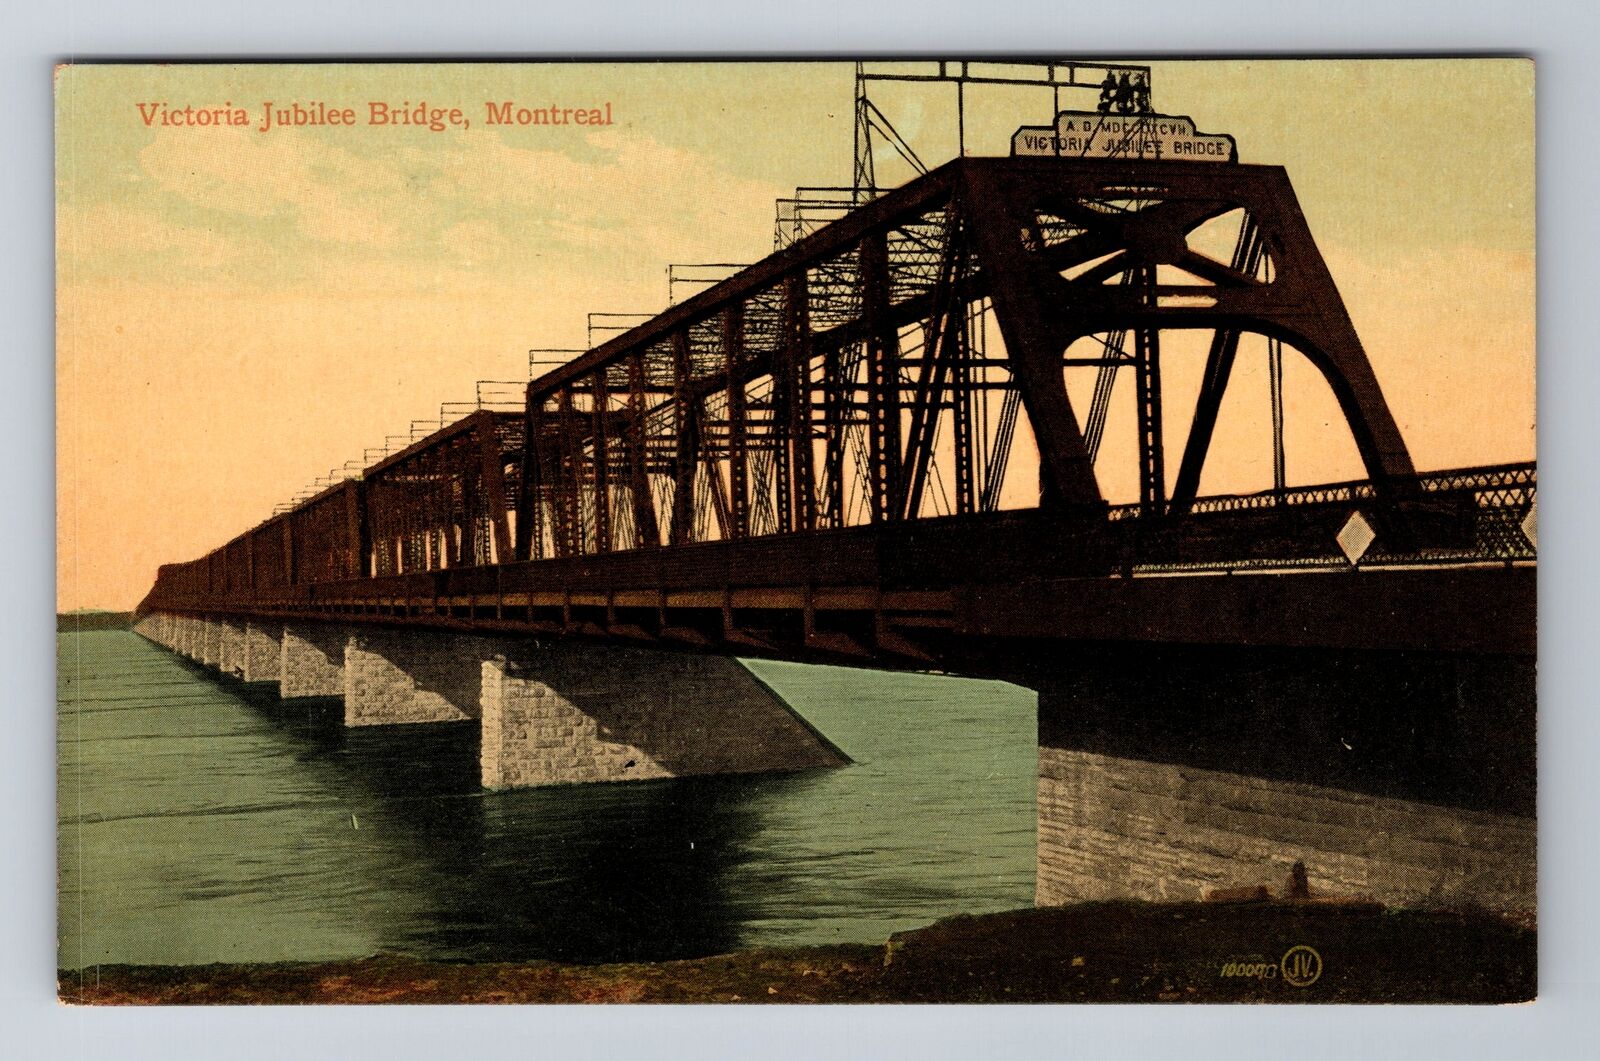 Montreal Ontario Canada, Victoria Jubilee Bridge, Antique Vintage Postcard